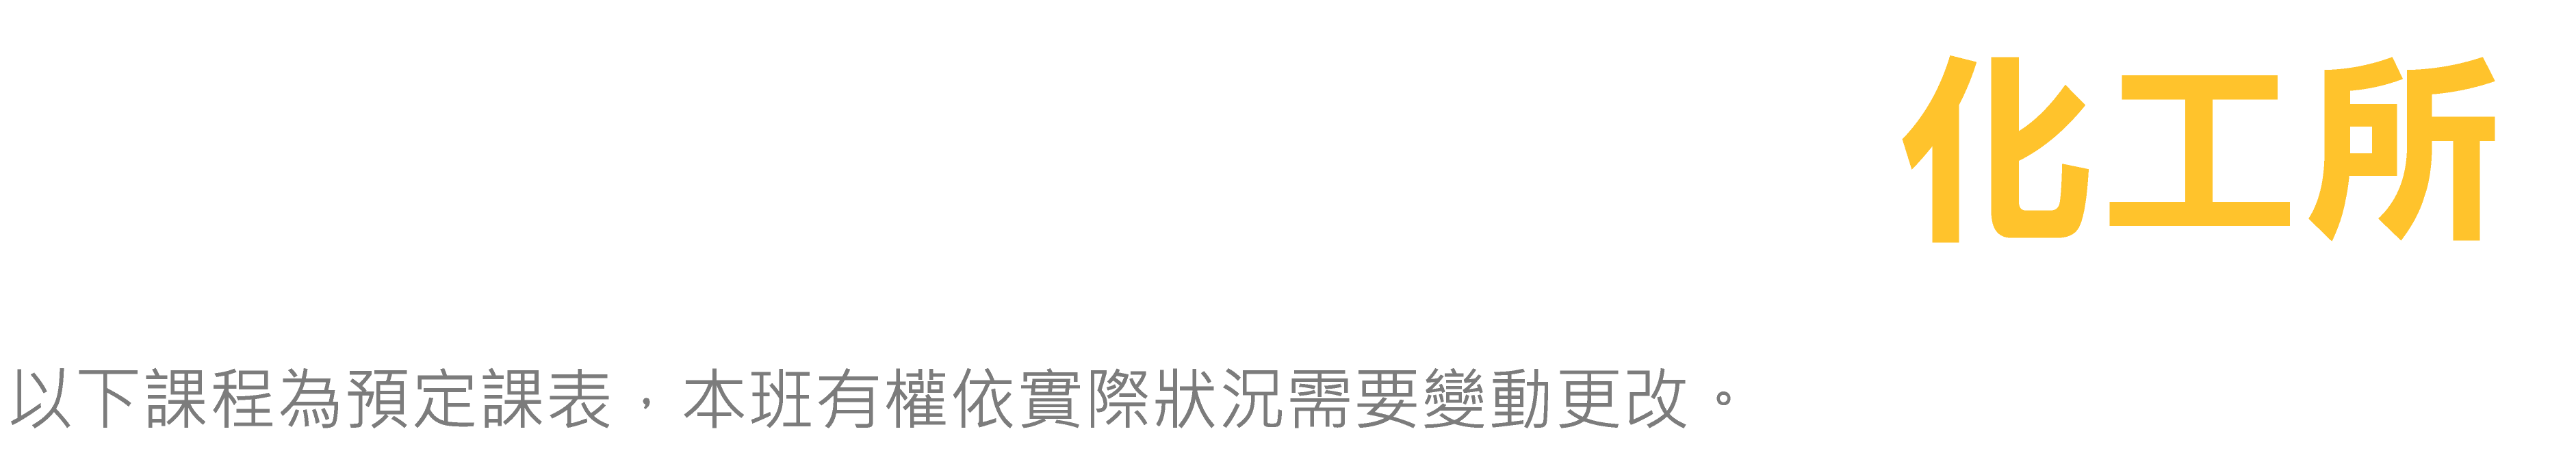 台北偉文 化工所 預定課表